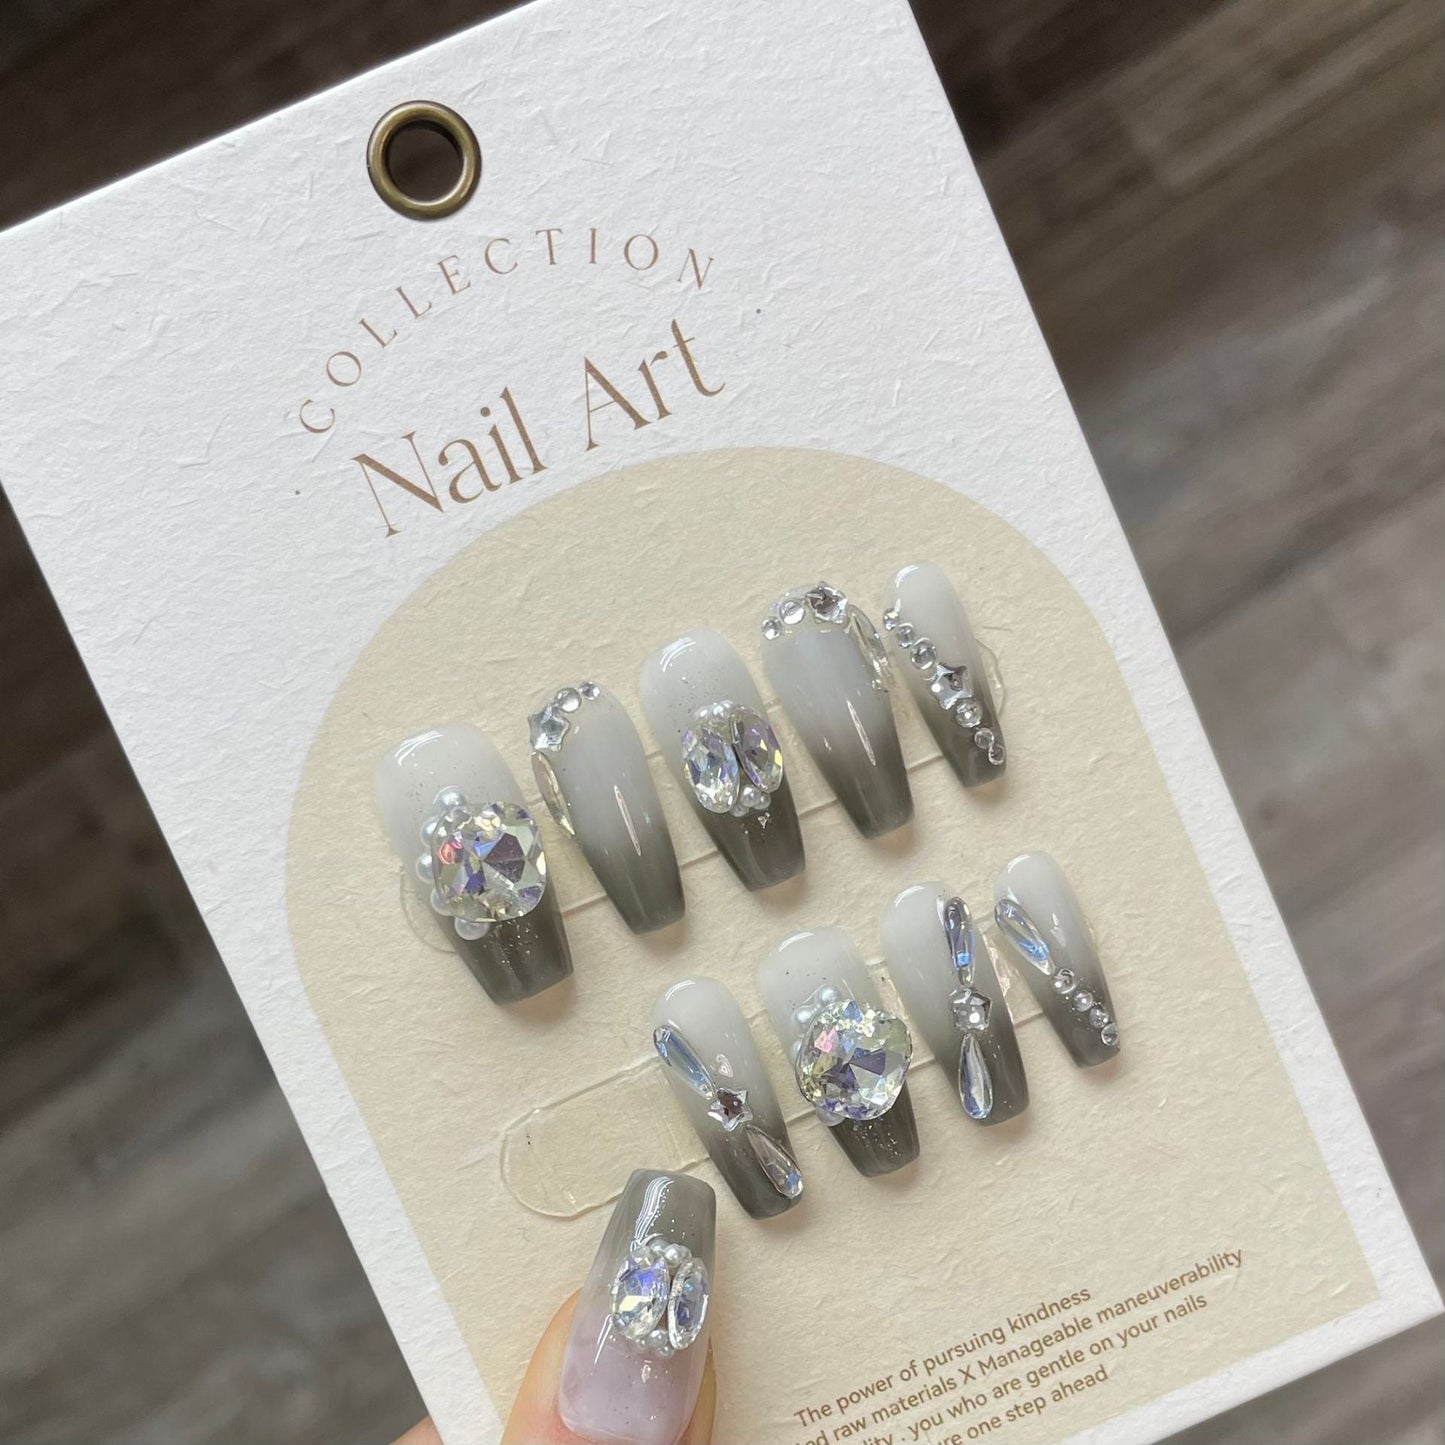 847 Rhinestone style press on nails 100% handmade false nails gray